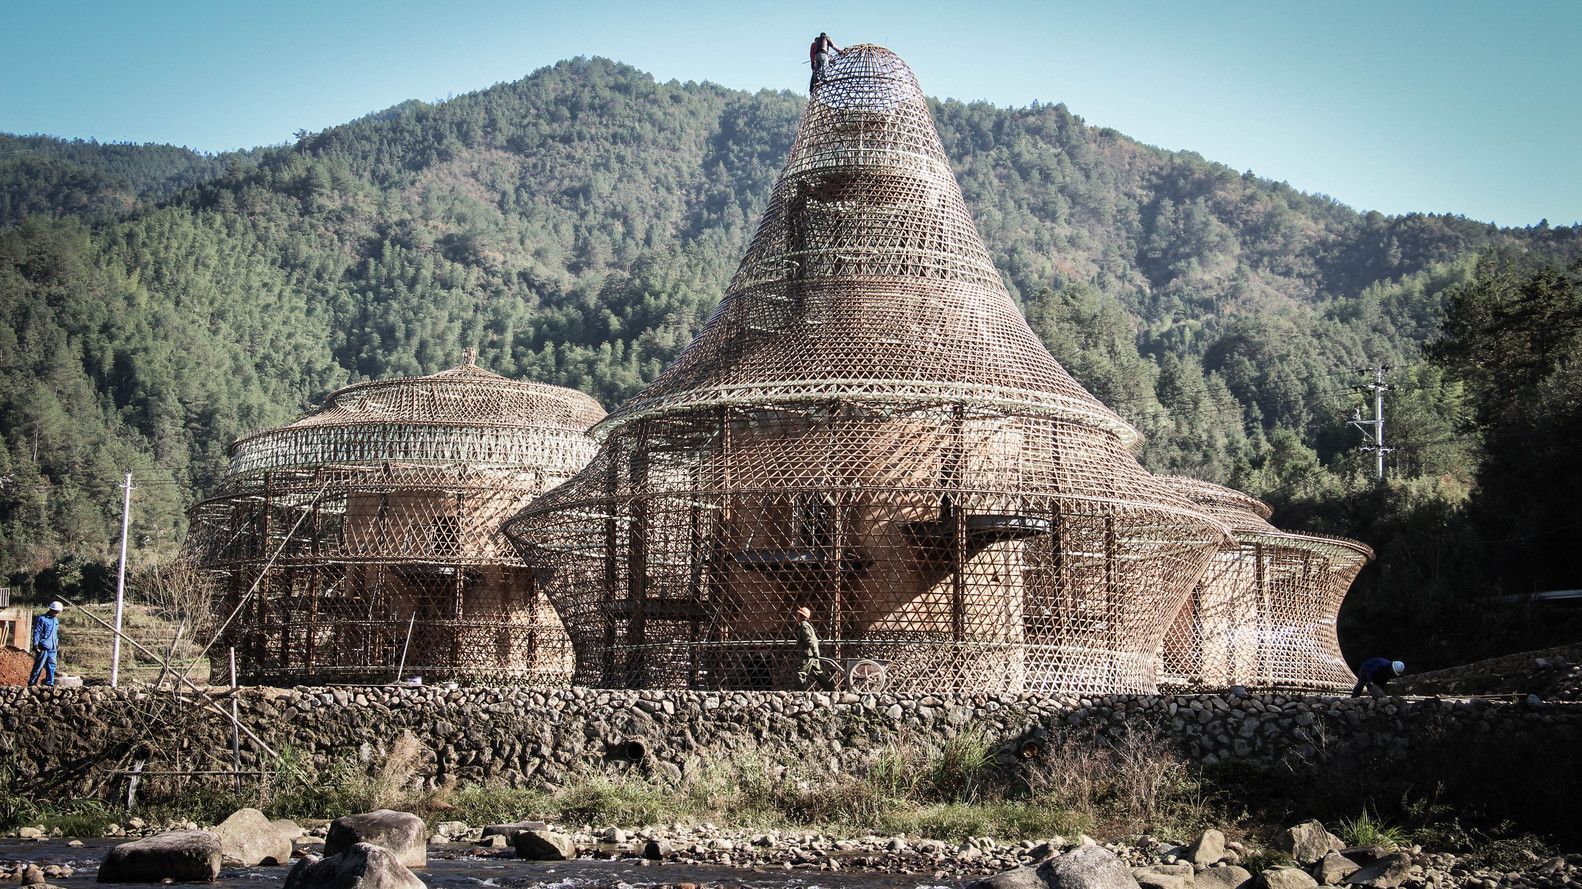 Как рыба в сетке: в Китае построили экологические хостелы странной формы – фото